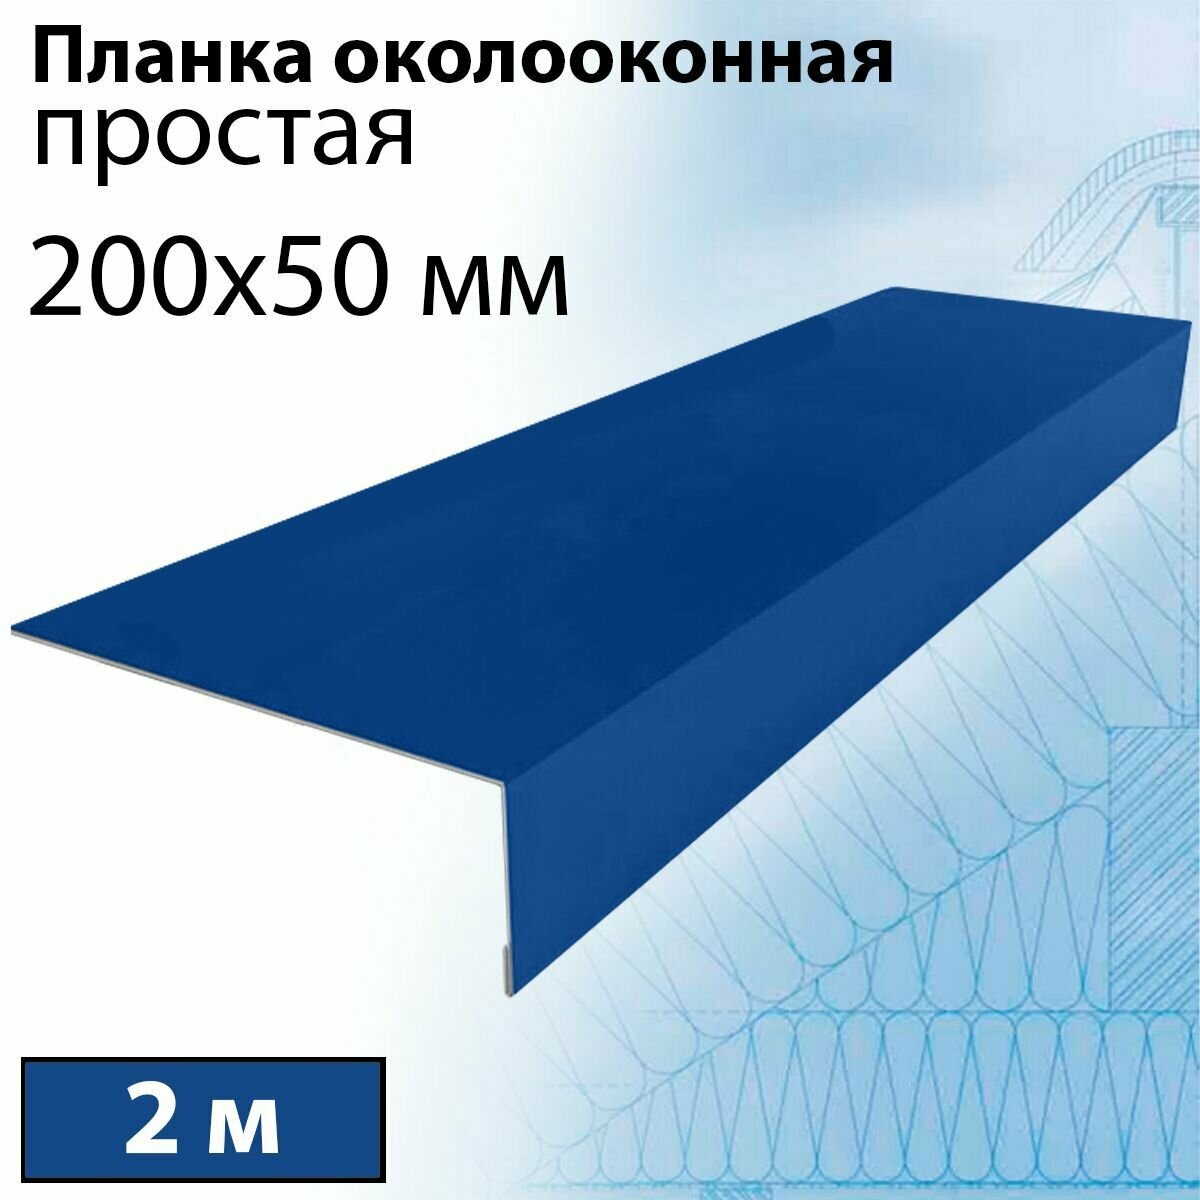 Планка околооконная простая 2 м (200х50 мм) 5 штук Планка лобовая металлическая (RAL 5005) синий - фотография № 1